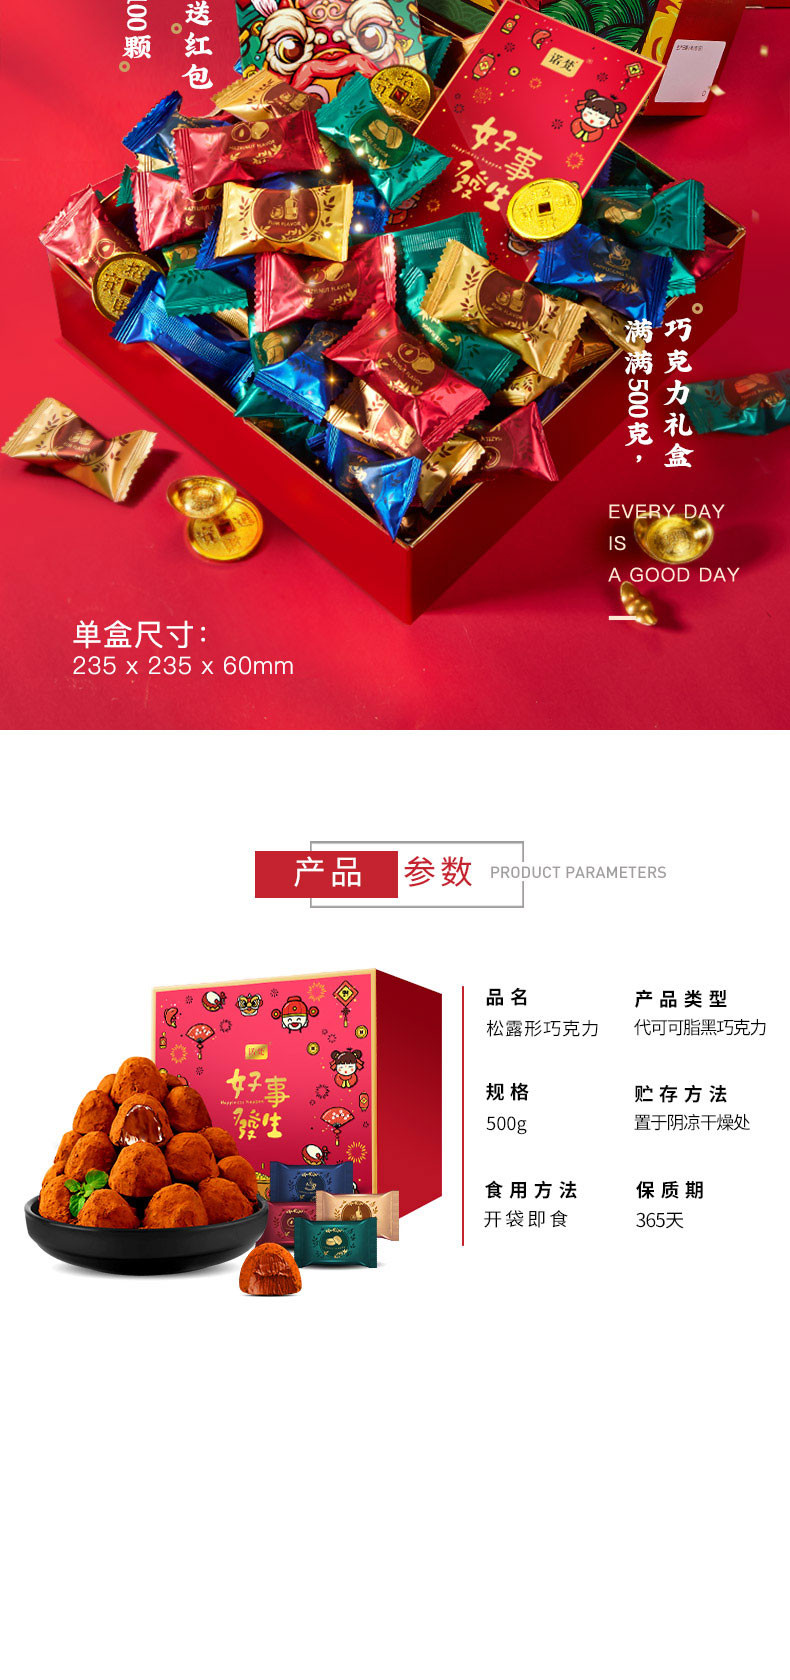 【领券减10】诺梵 新年松露巧克力礼盒500g 赠送两个红包